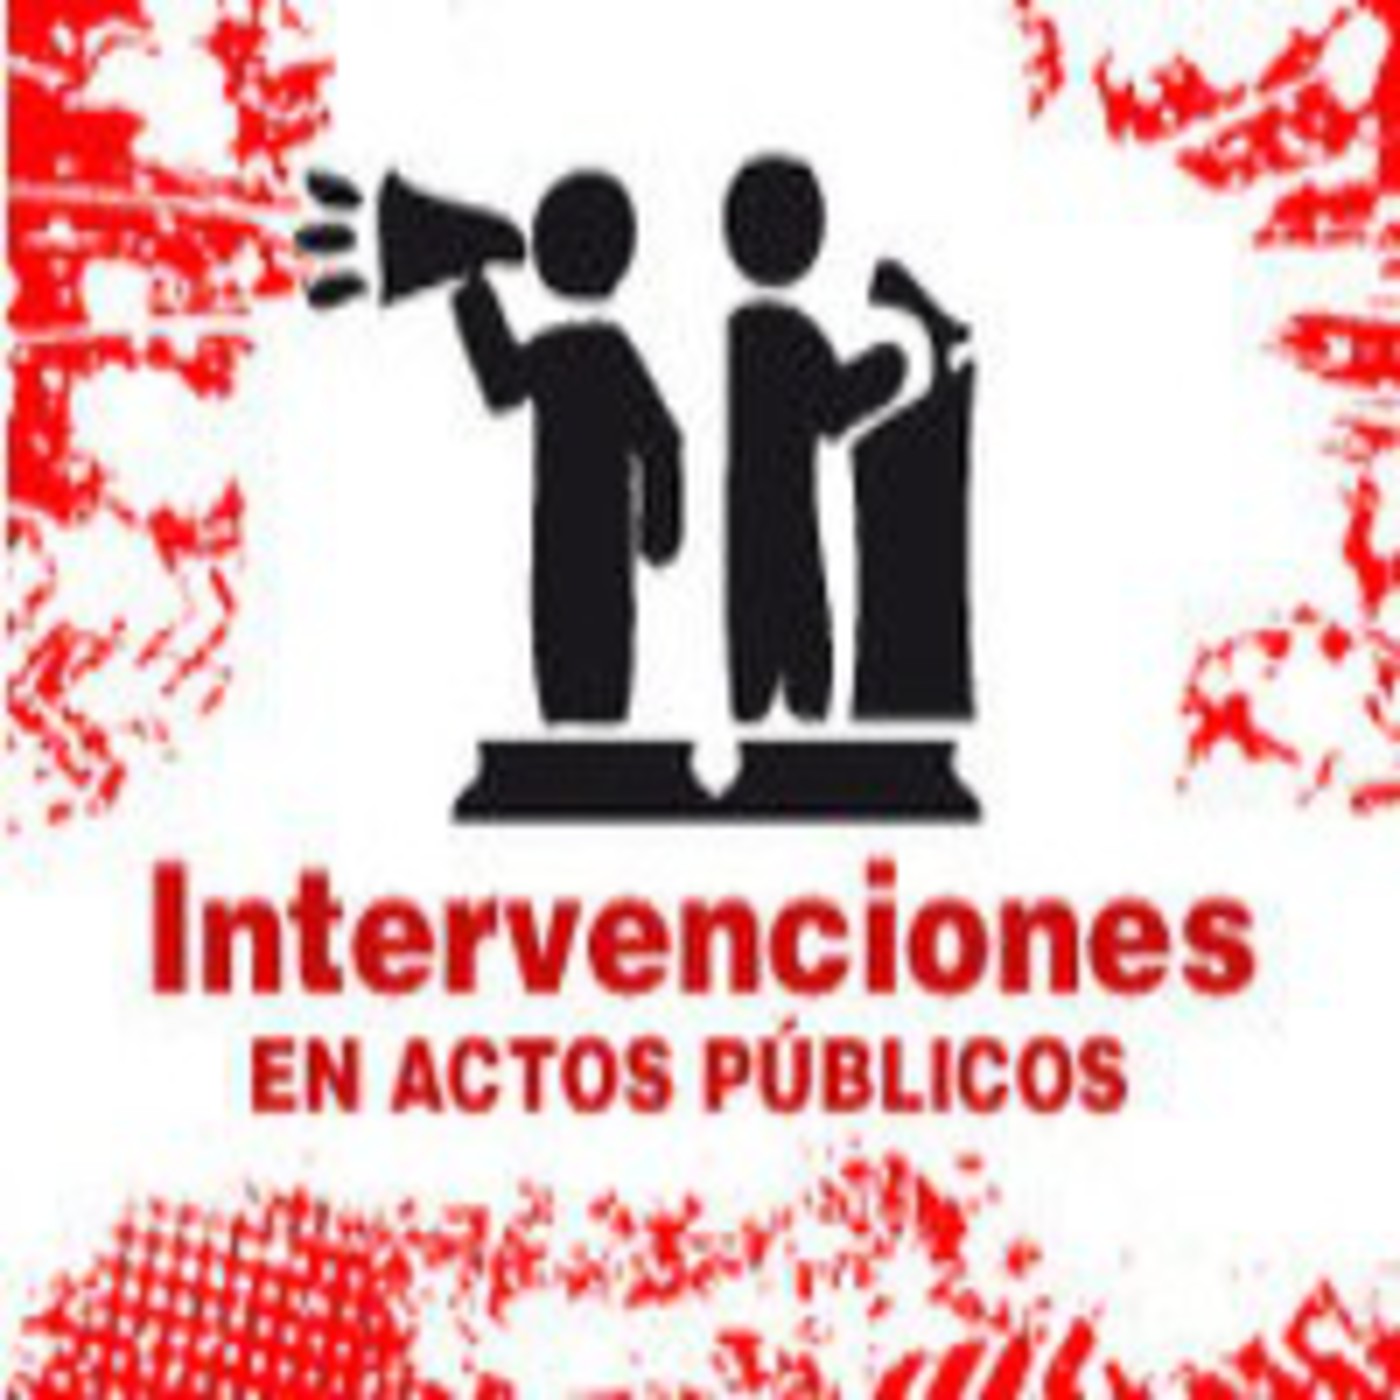 Intervenciones en actos públicos